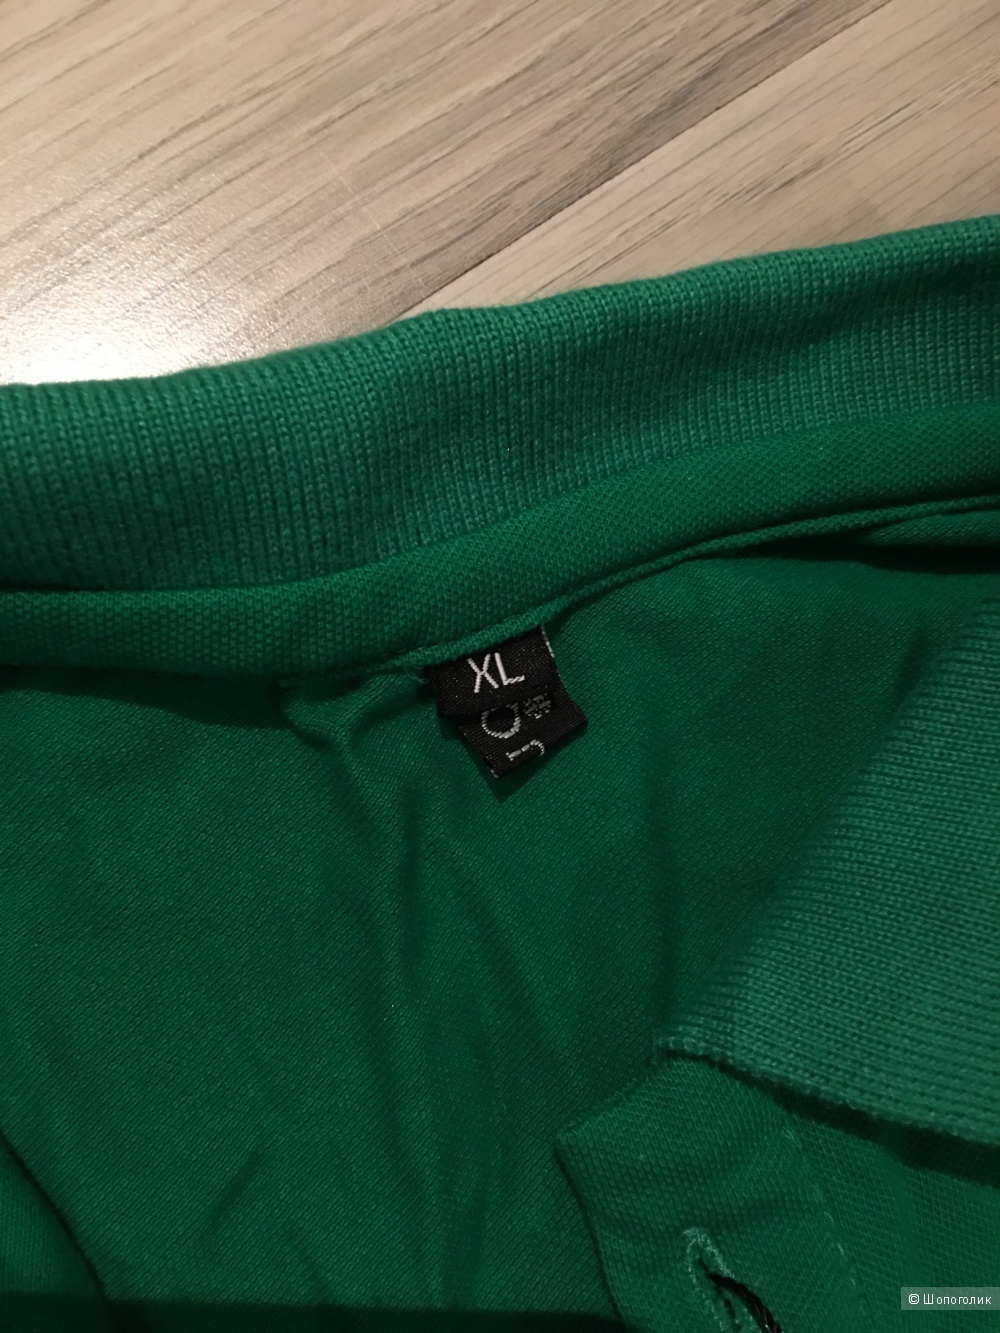 Мужская футболка, ralph lauren,цвет зеленый,размер XL, маломерит, копия,новая!